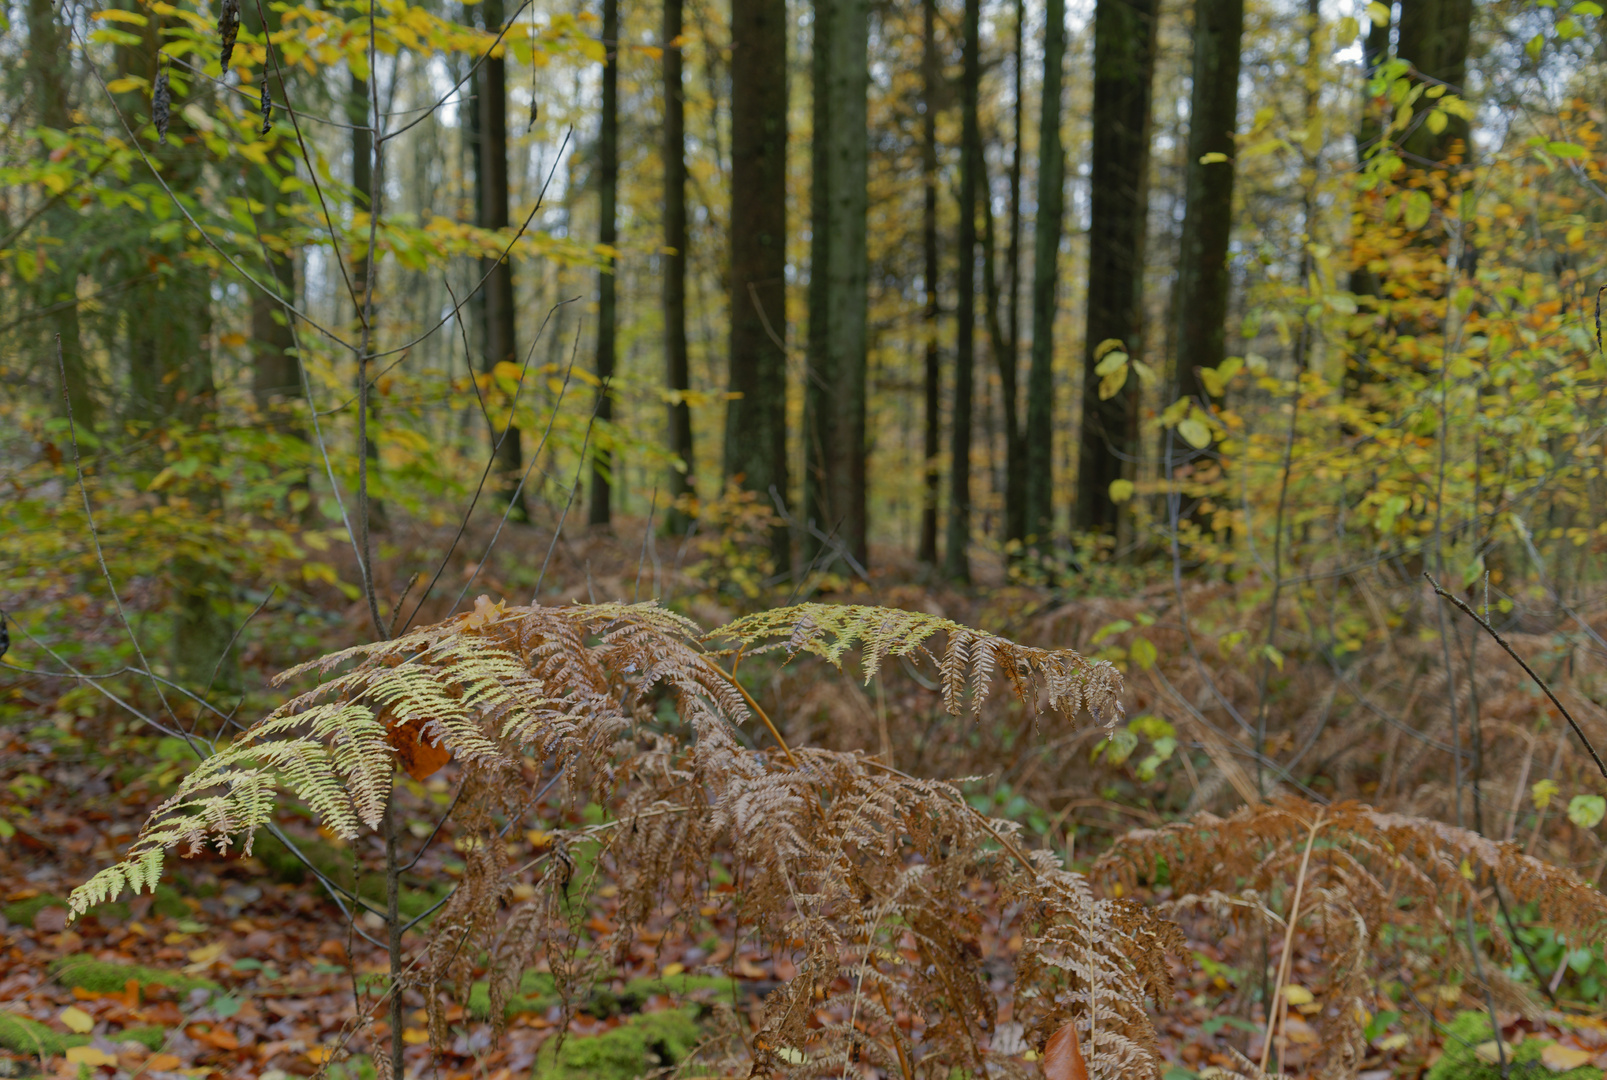 Details im Wald, hier: Farnblätter im Herbstwald